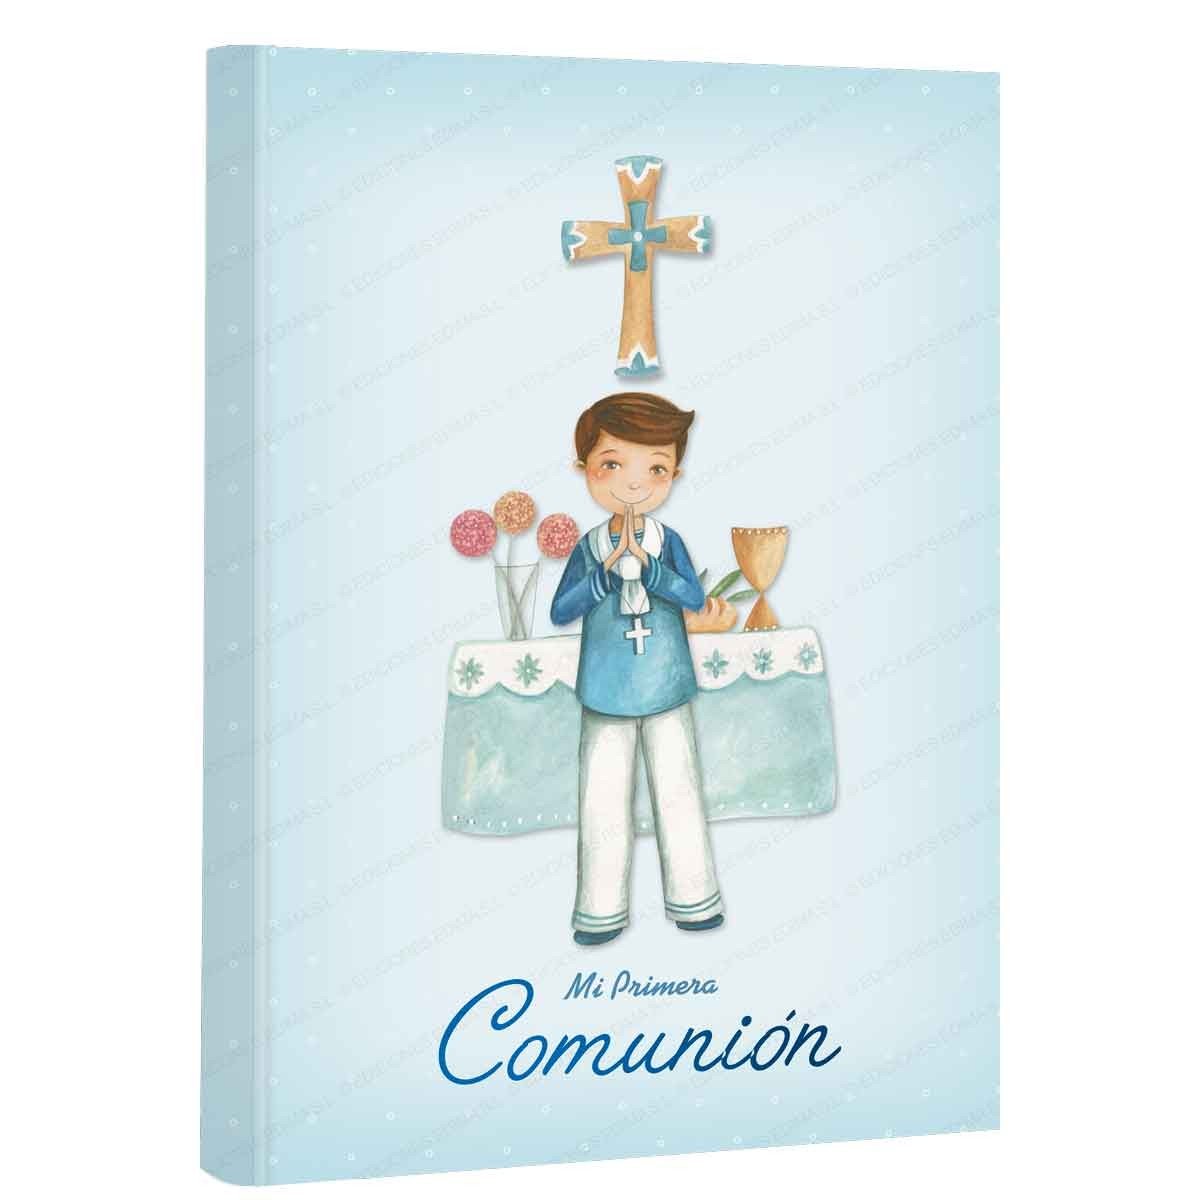 Libro de firmas comunion niño: Libro de comunión personalizado e original -  Regalo para primera comunión de niño. Español (Spanish Edition)